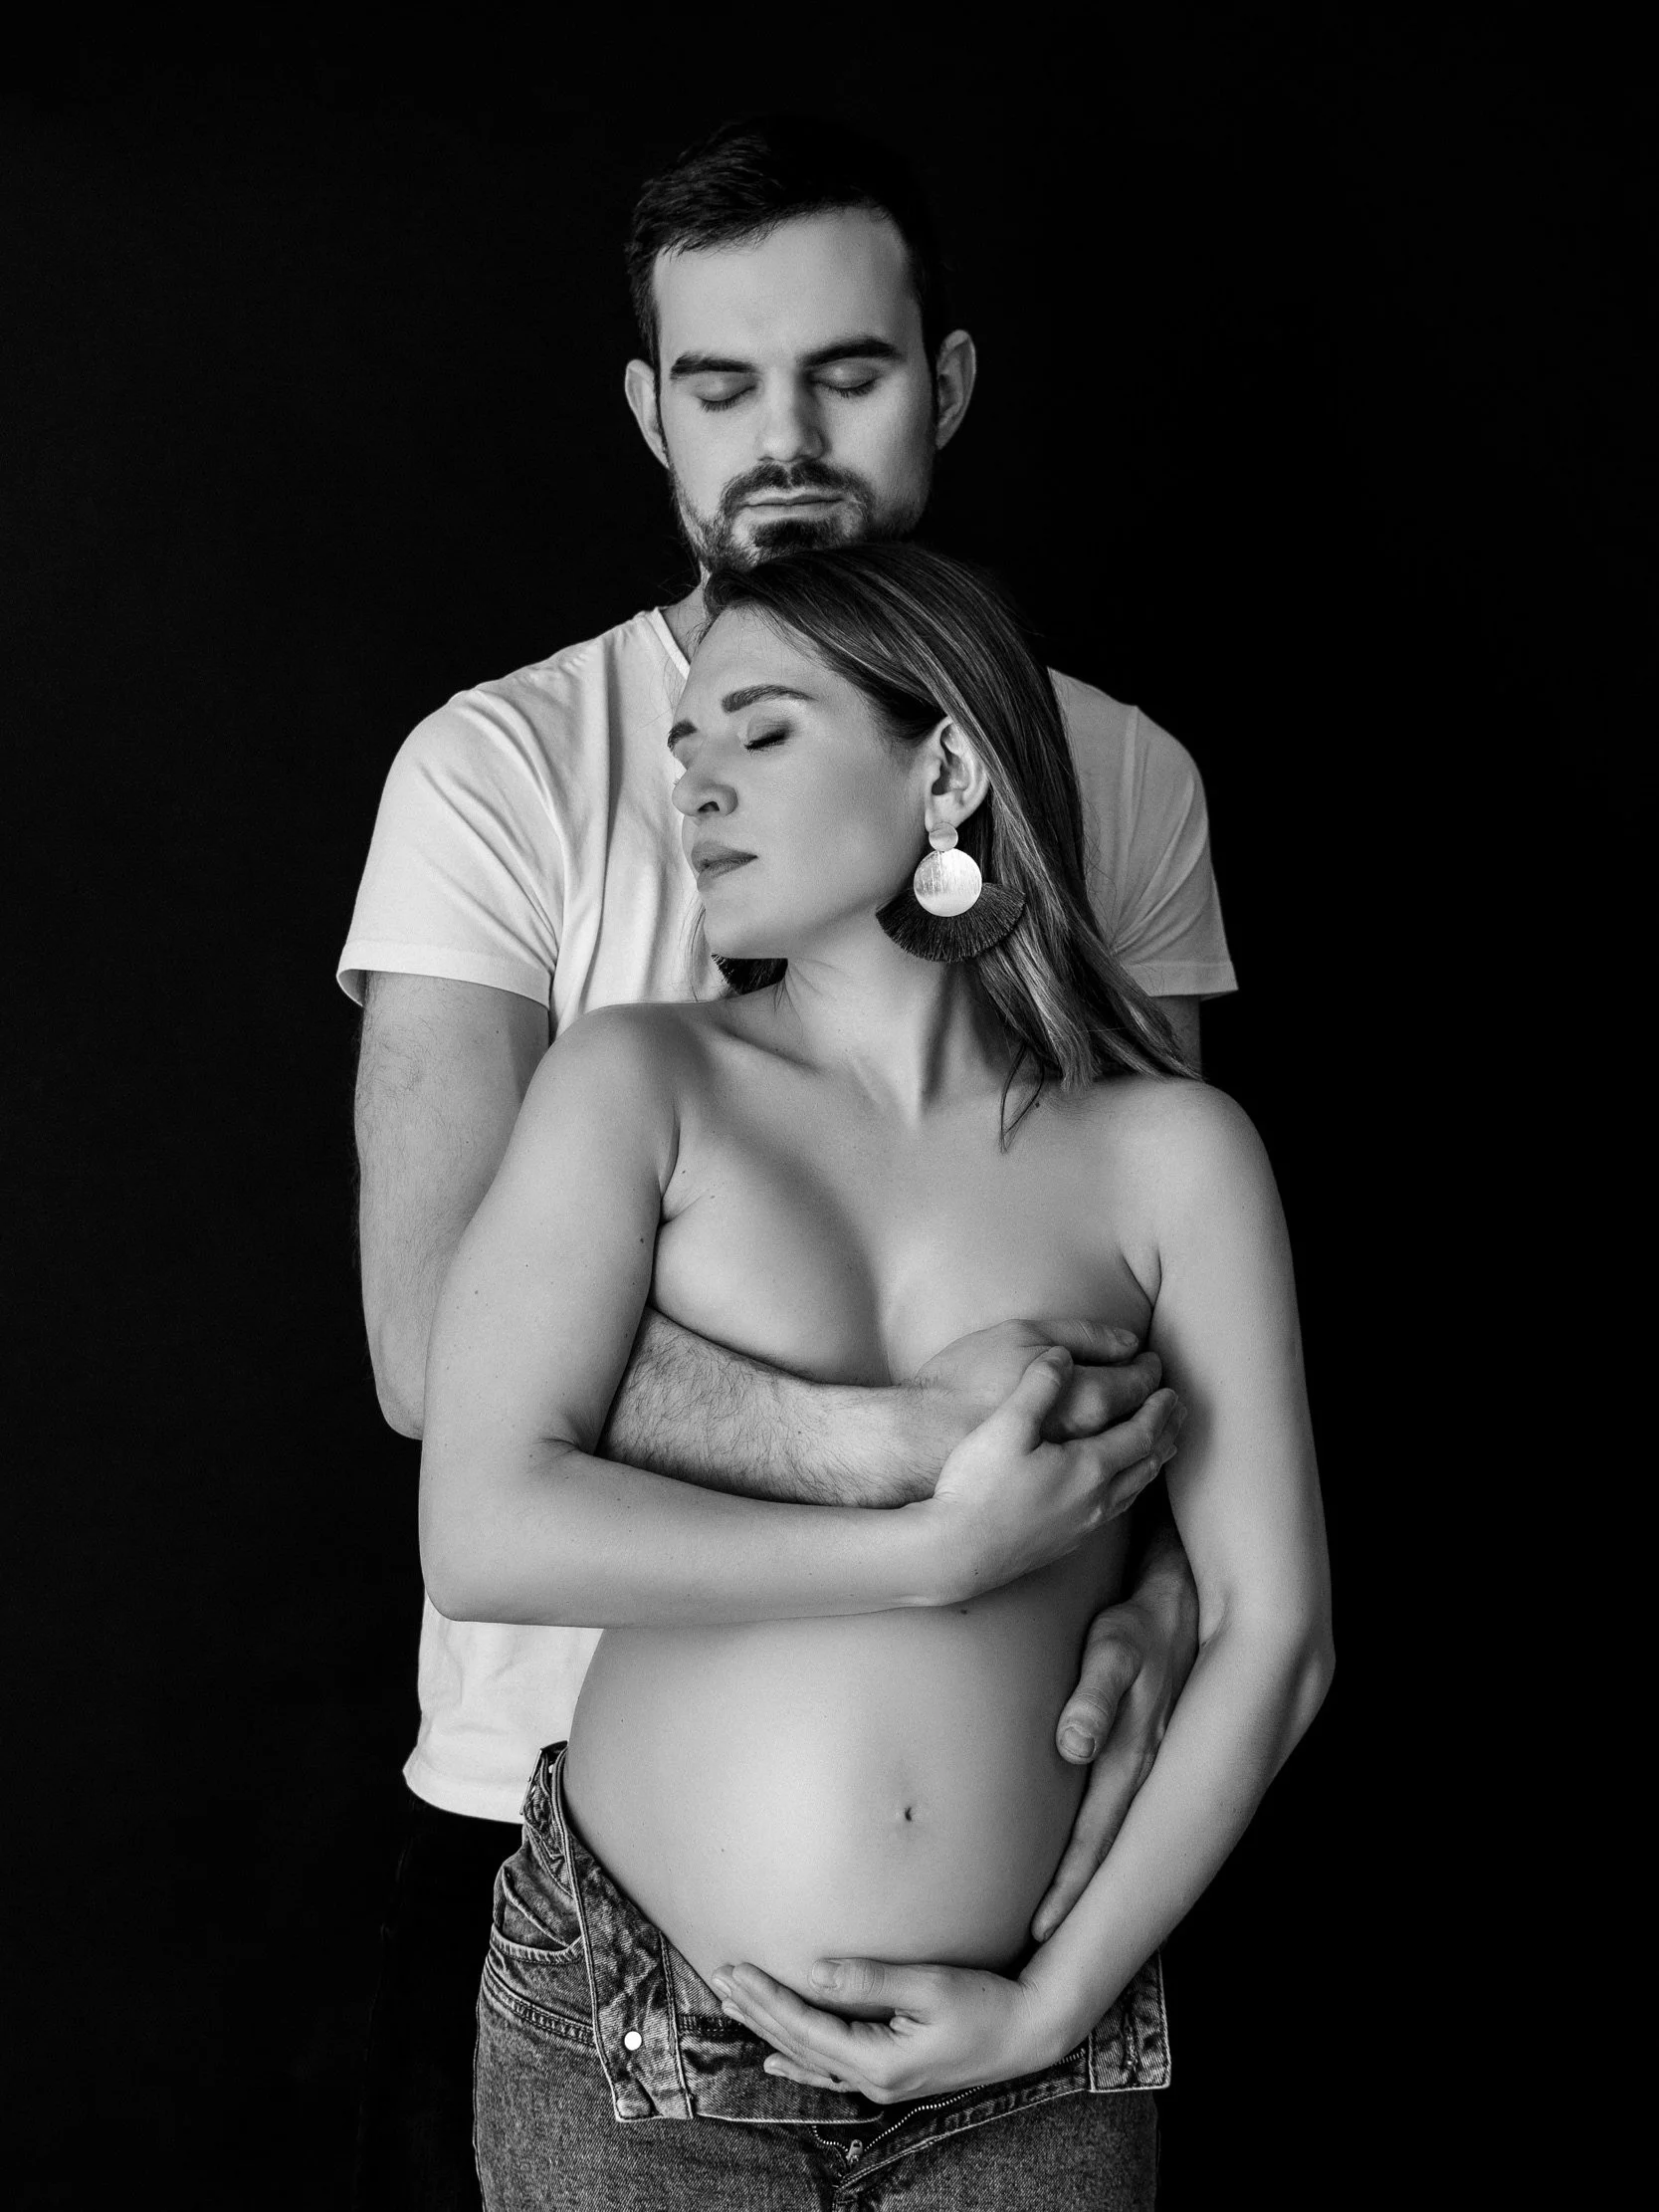 Ljubezen v objektivu: prelepa nosečniška fotografija v črno-beli tehniki v našem studiu v Ljubljani